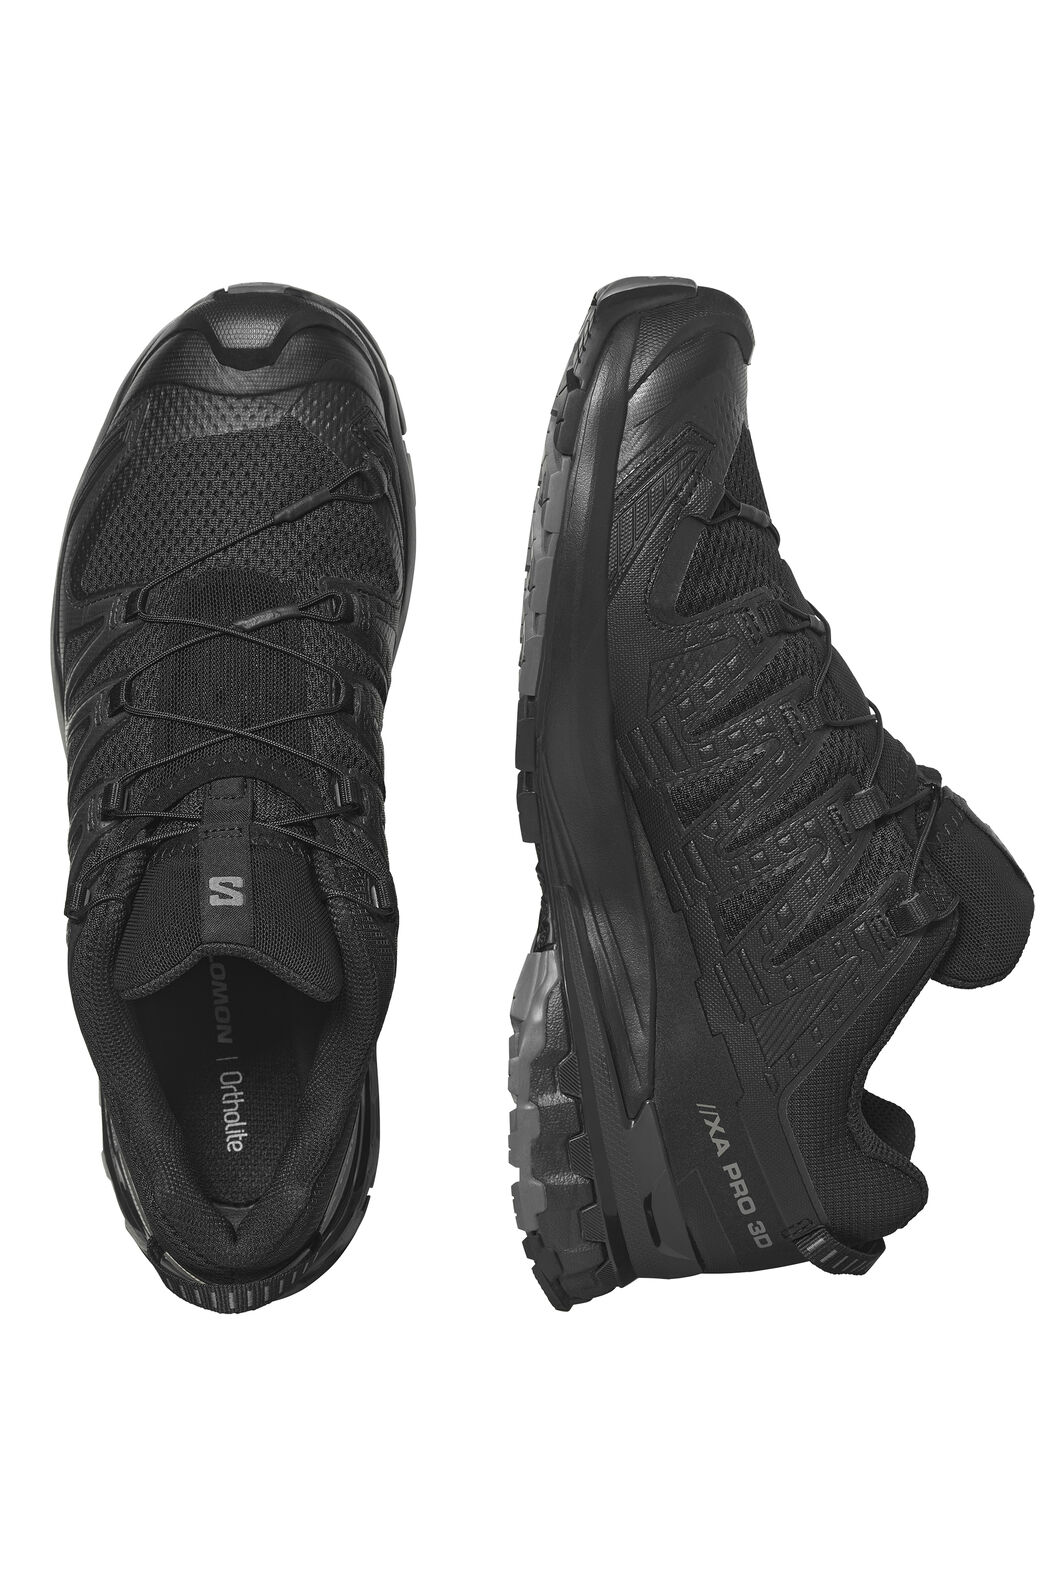 Salomon Men's XA PRO 3D V9 Running Shoes